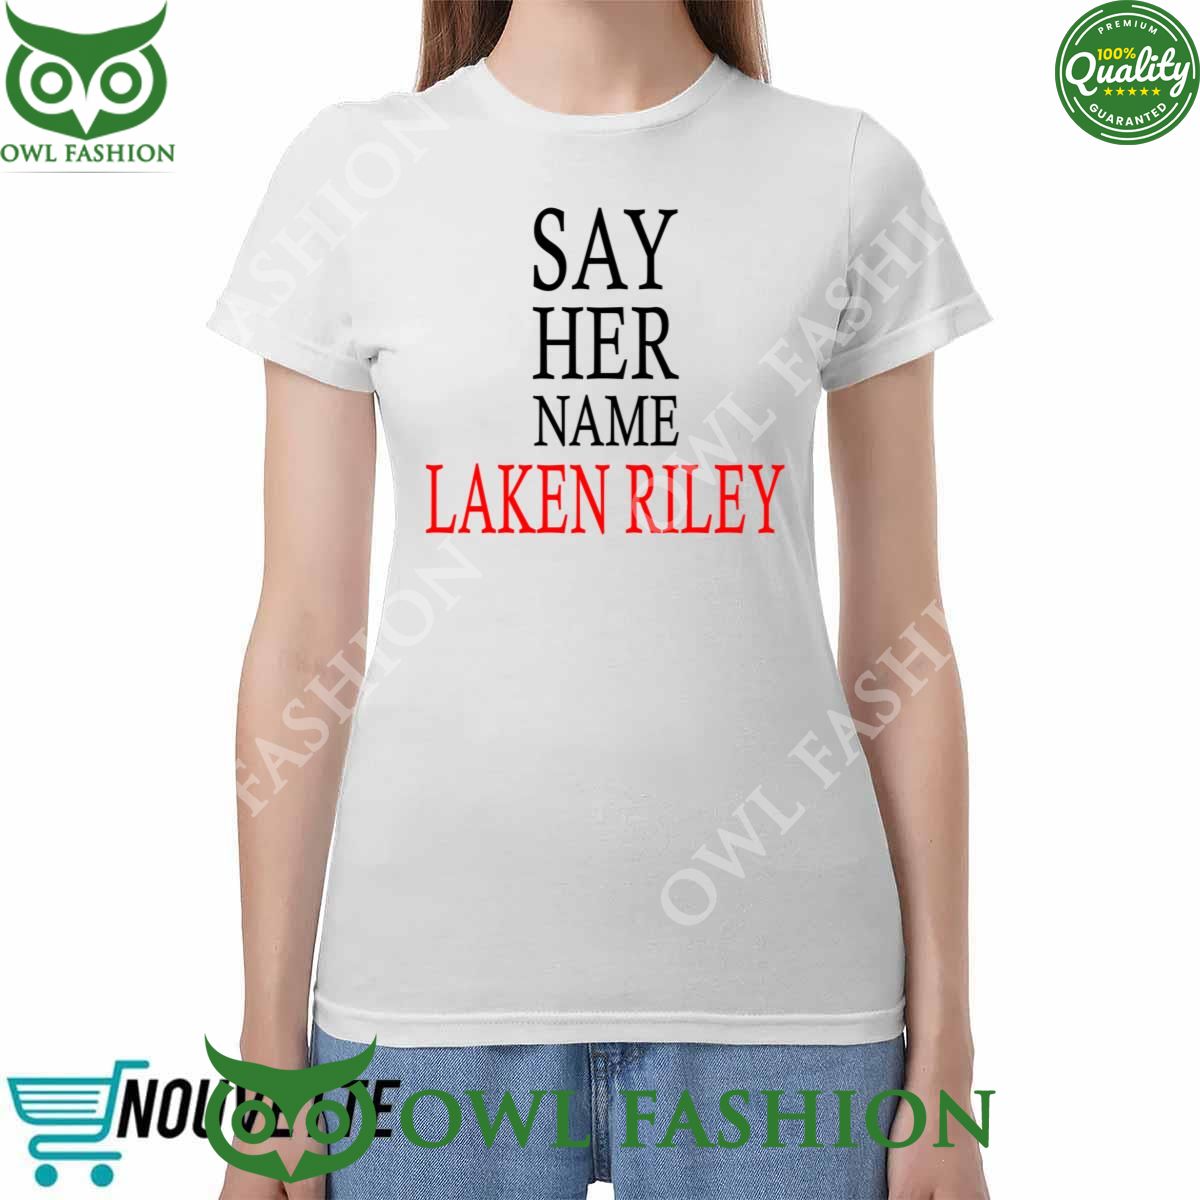 say her name laken riley t shirt 1 SvoMo.jpg